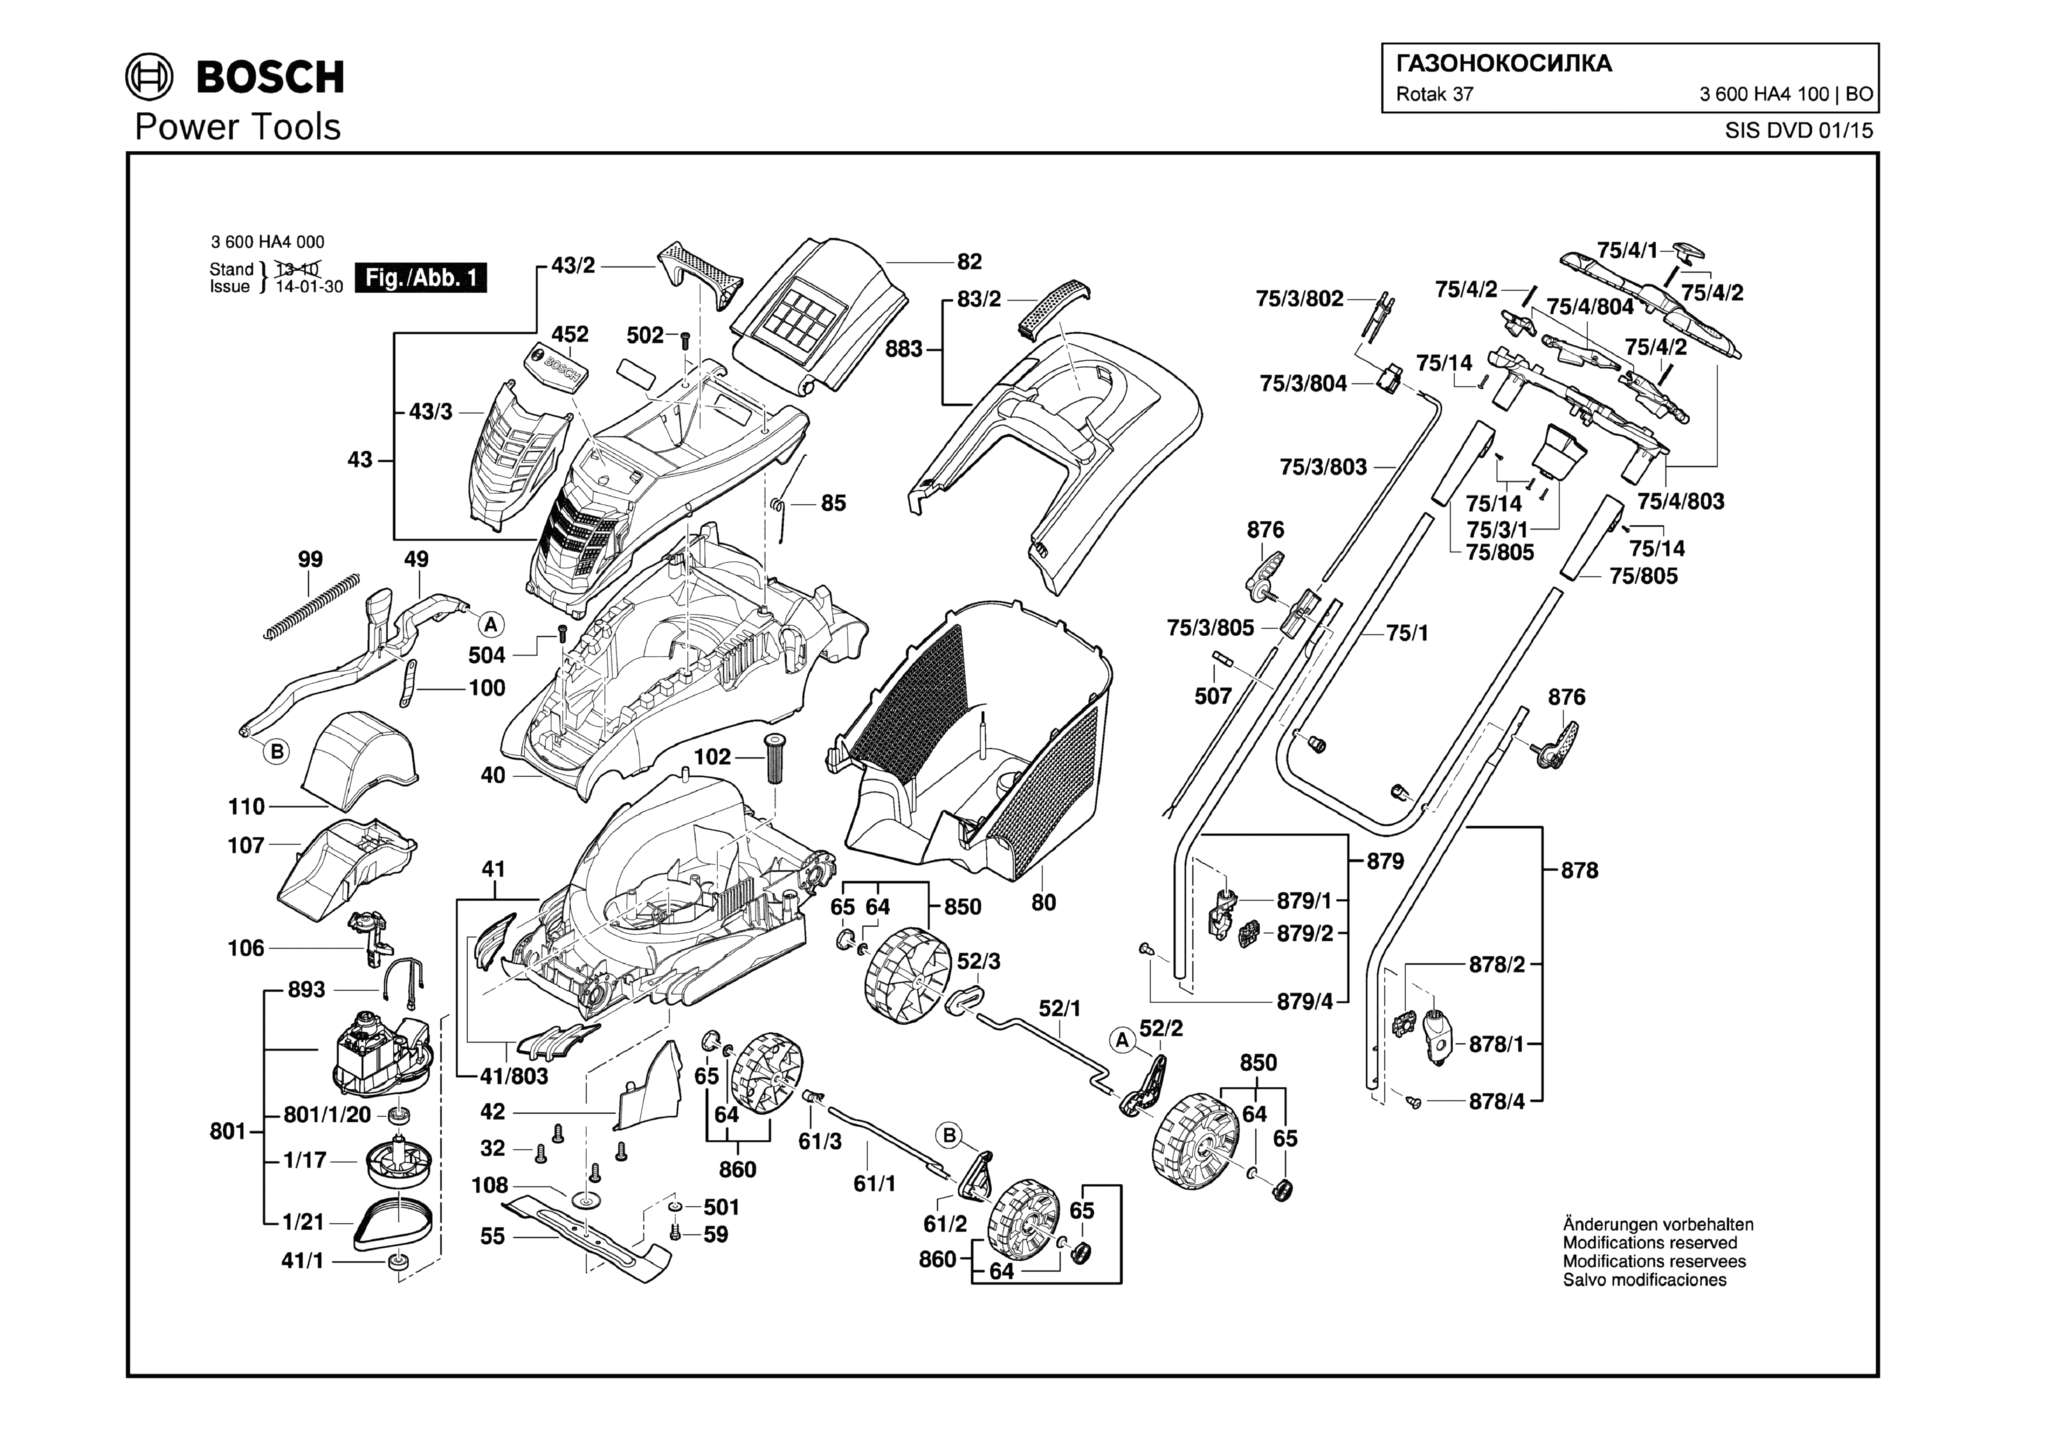 Запчасти, схема и деталировка Bosch ROTAK 37 (ТИП 3600HA4100)